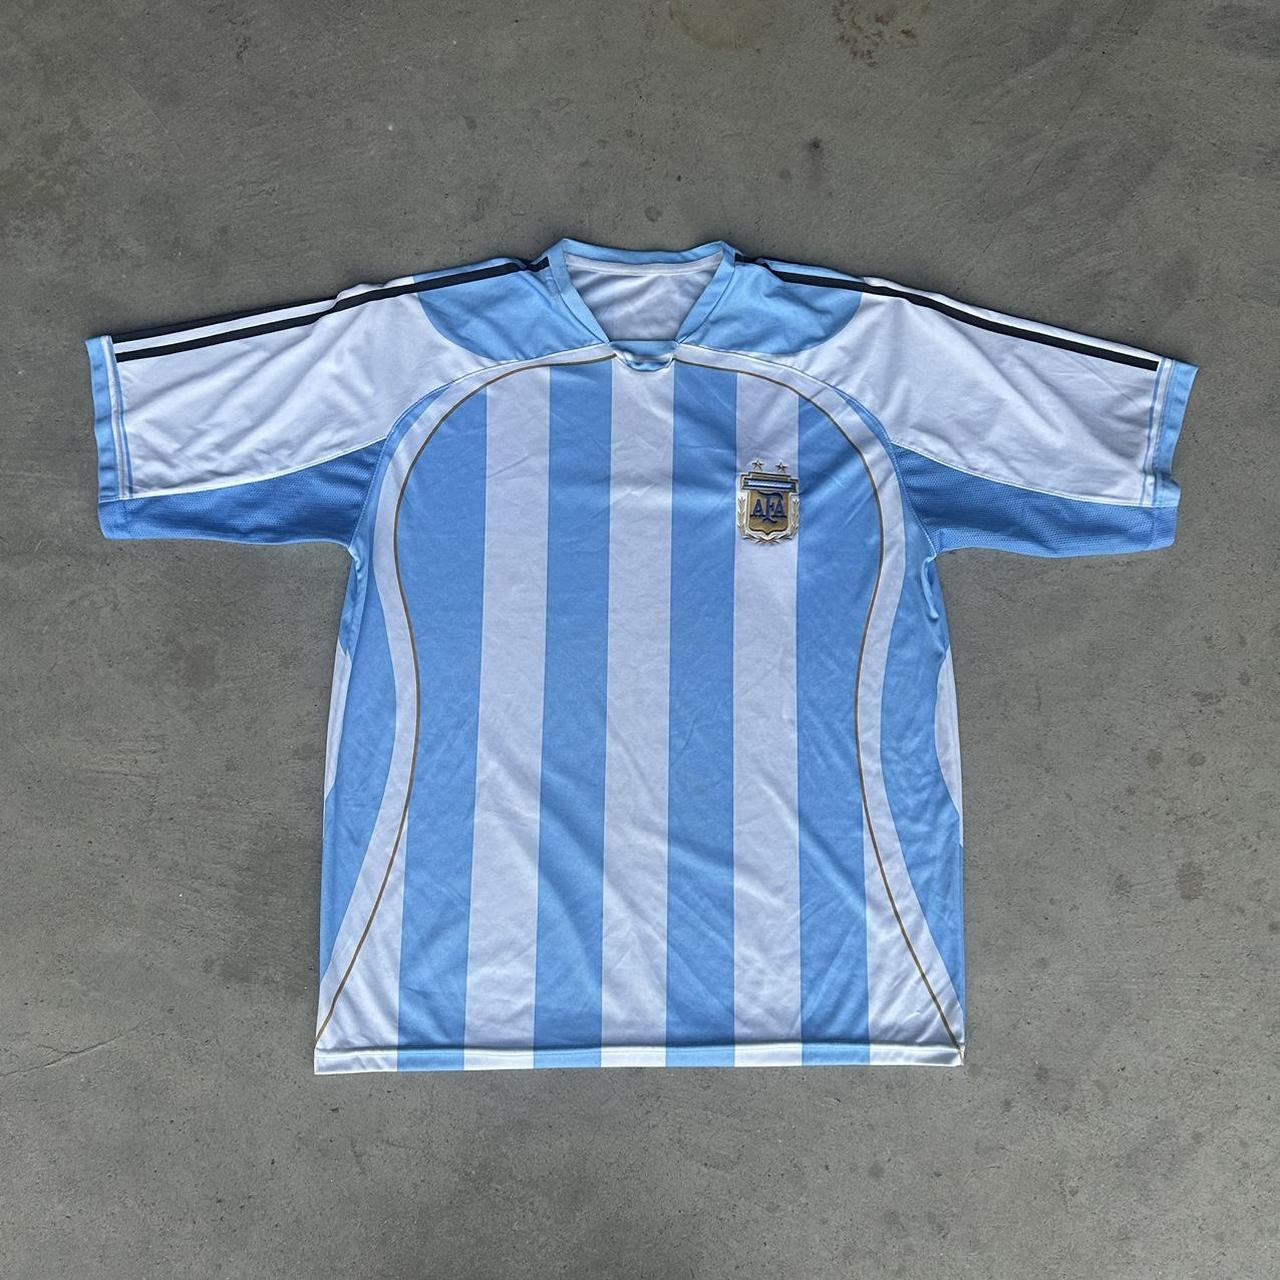 vintage argentina soccer jersey